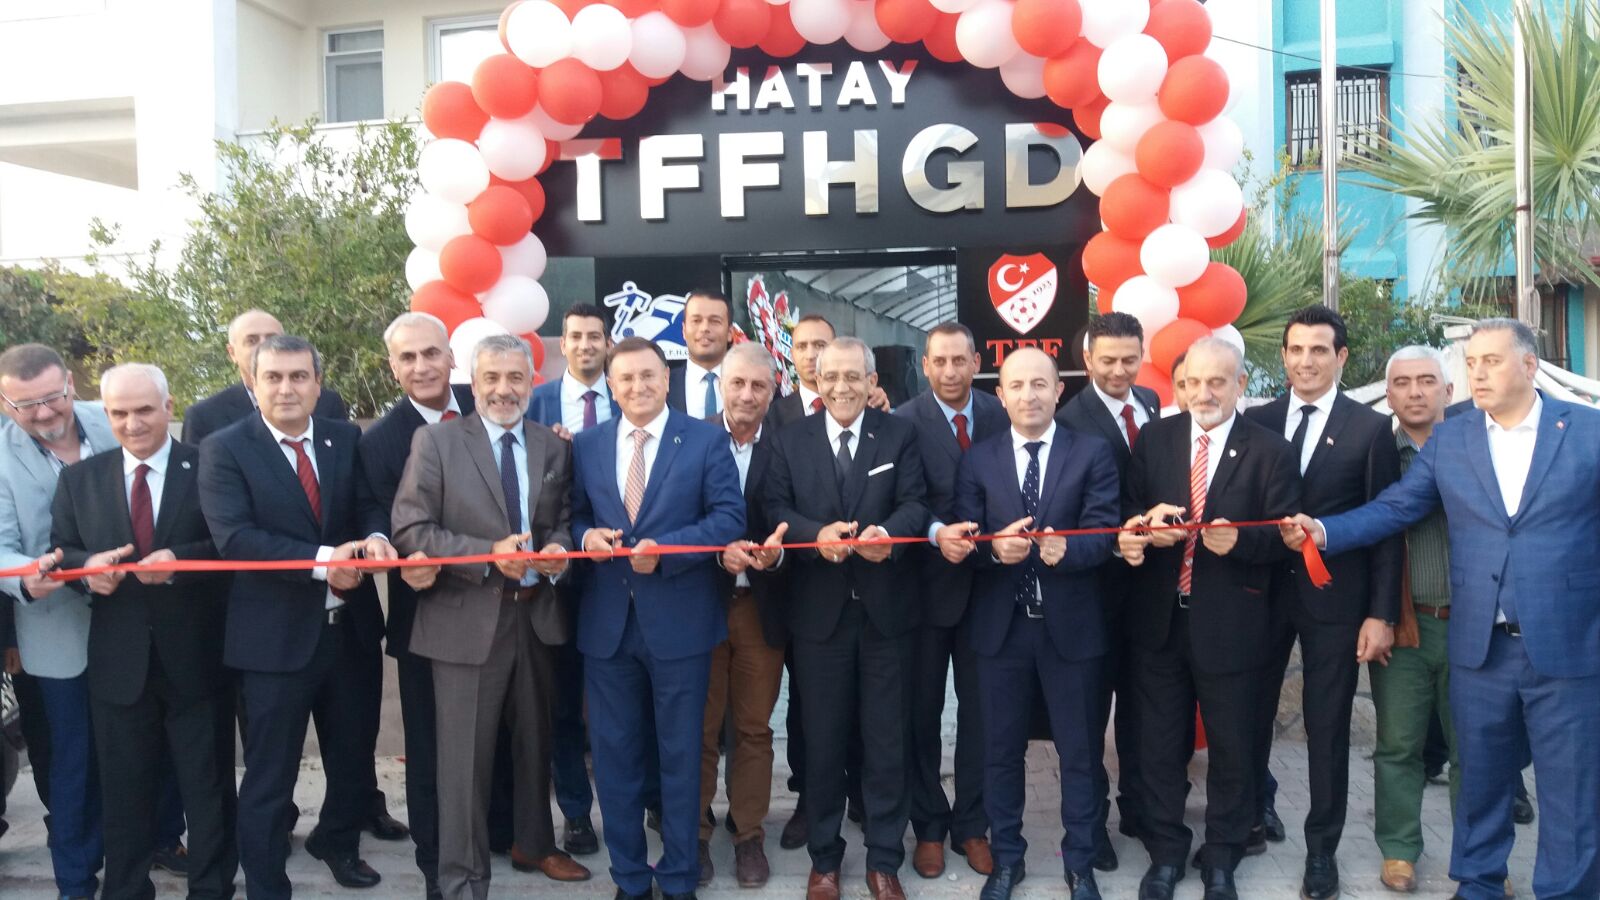 Tffhgd Hatay Şubesi Yeni Dernek Binası Hizmete Açıldı